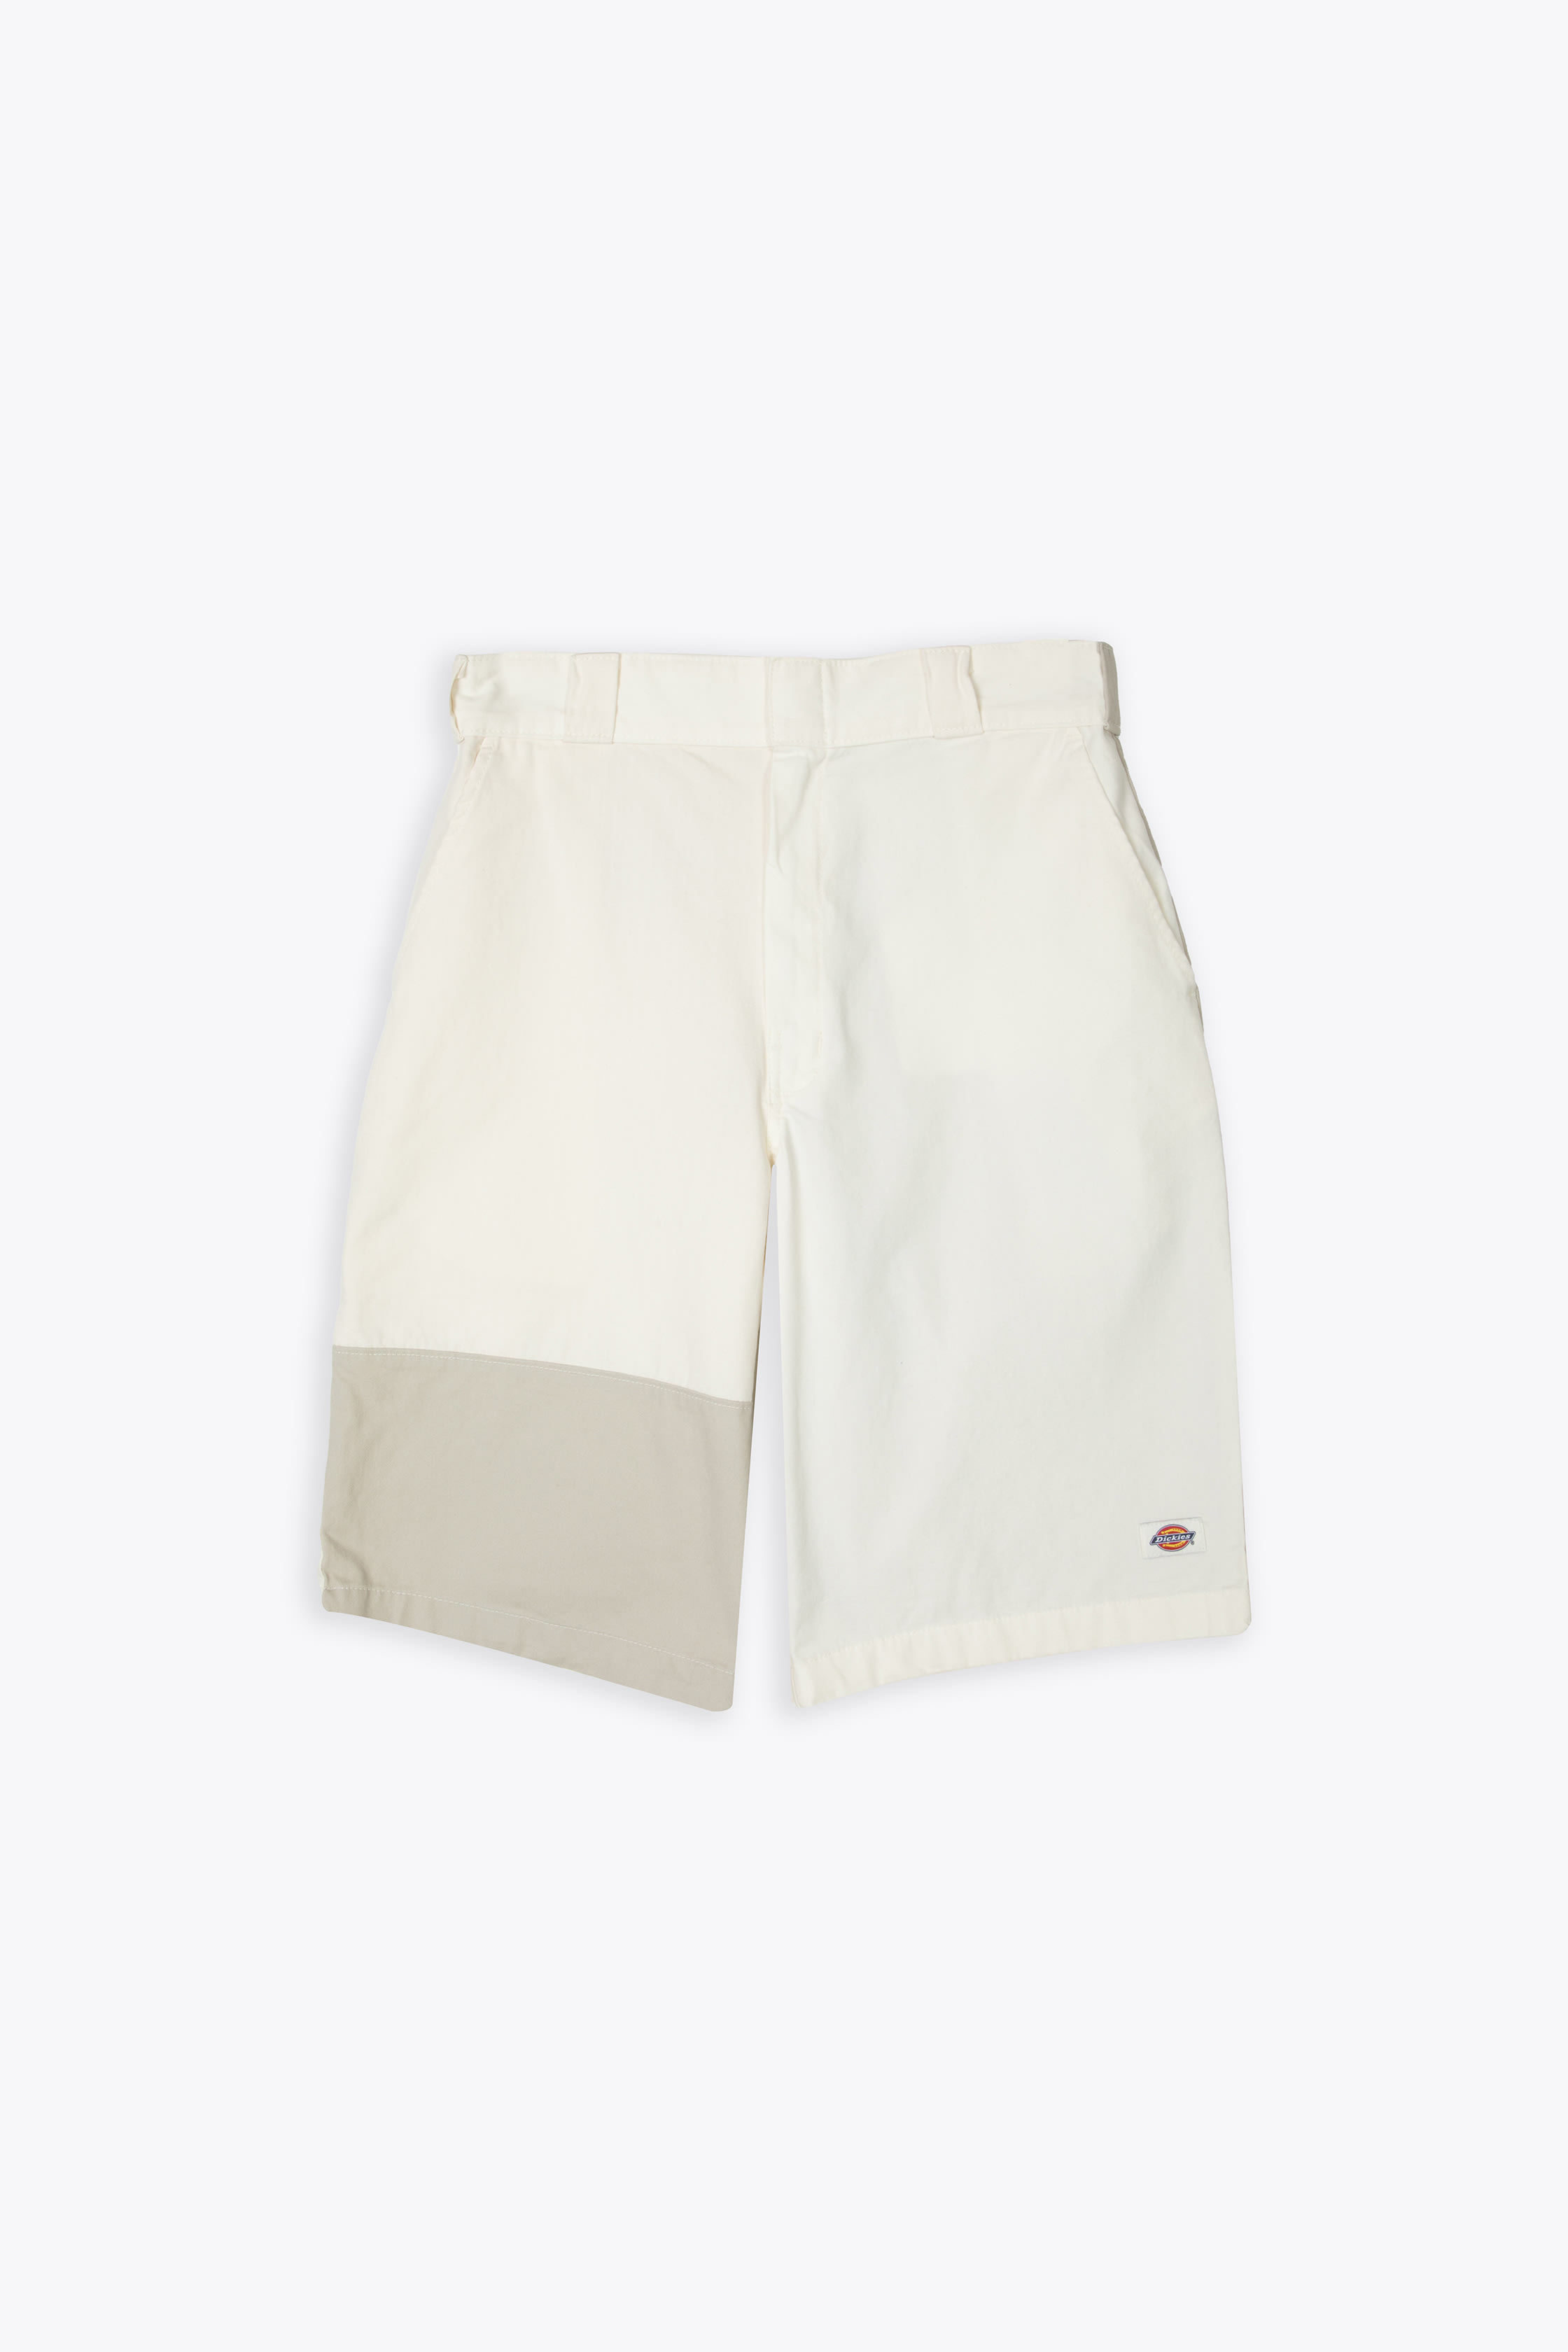 爆買いセール ディッキーズ Dickies eddyville colour block shorts in off white メンズ 